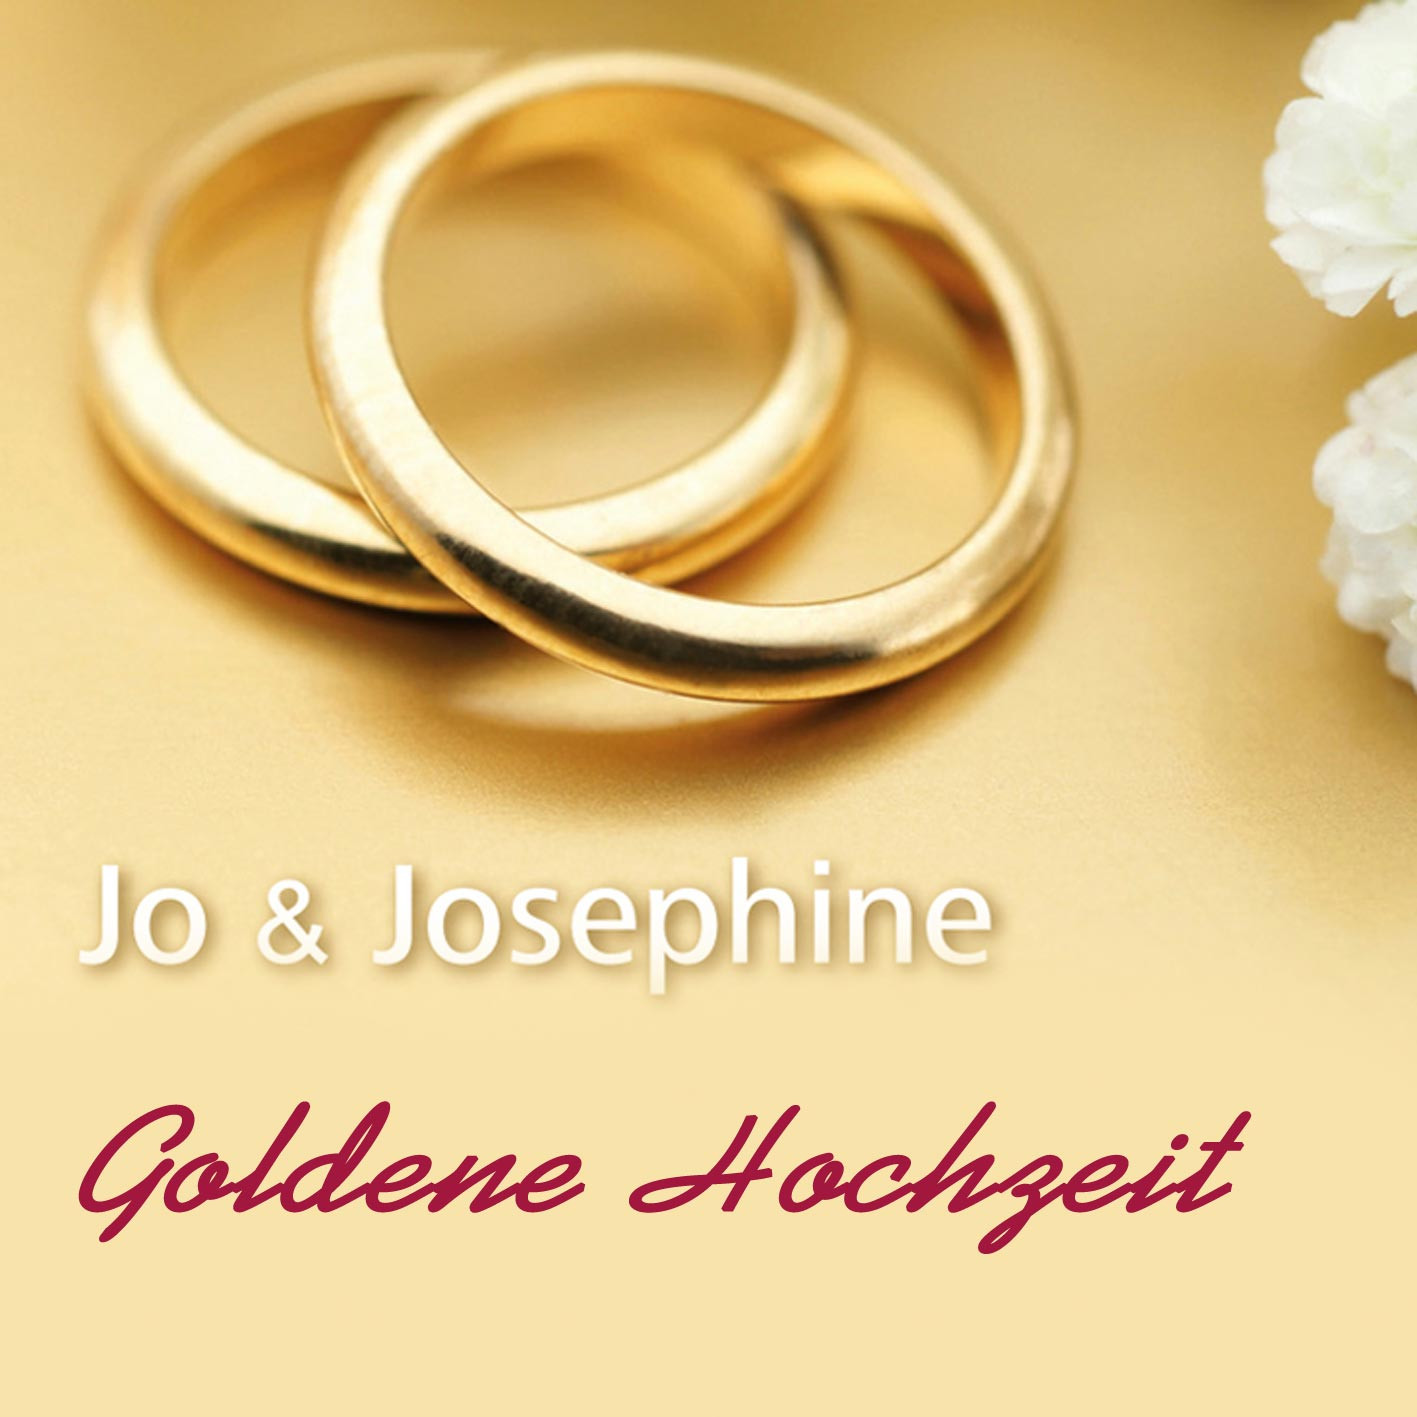 Lied Zur Goldenen Hochzeit Umgedichtet
 Lied Goldene Hochzeit als MP3 Hochzeitsjubiläen